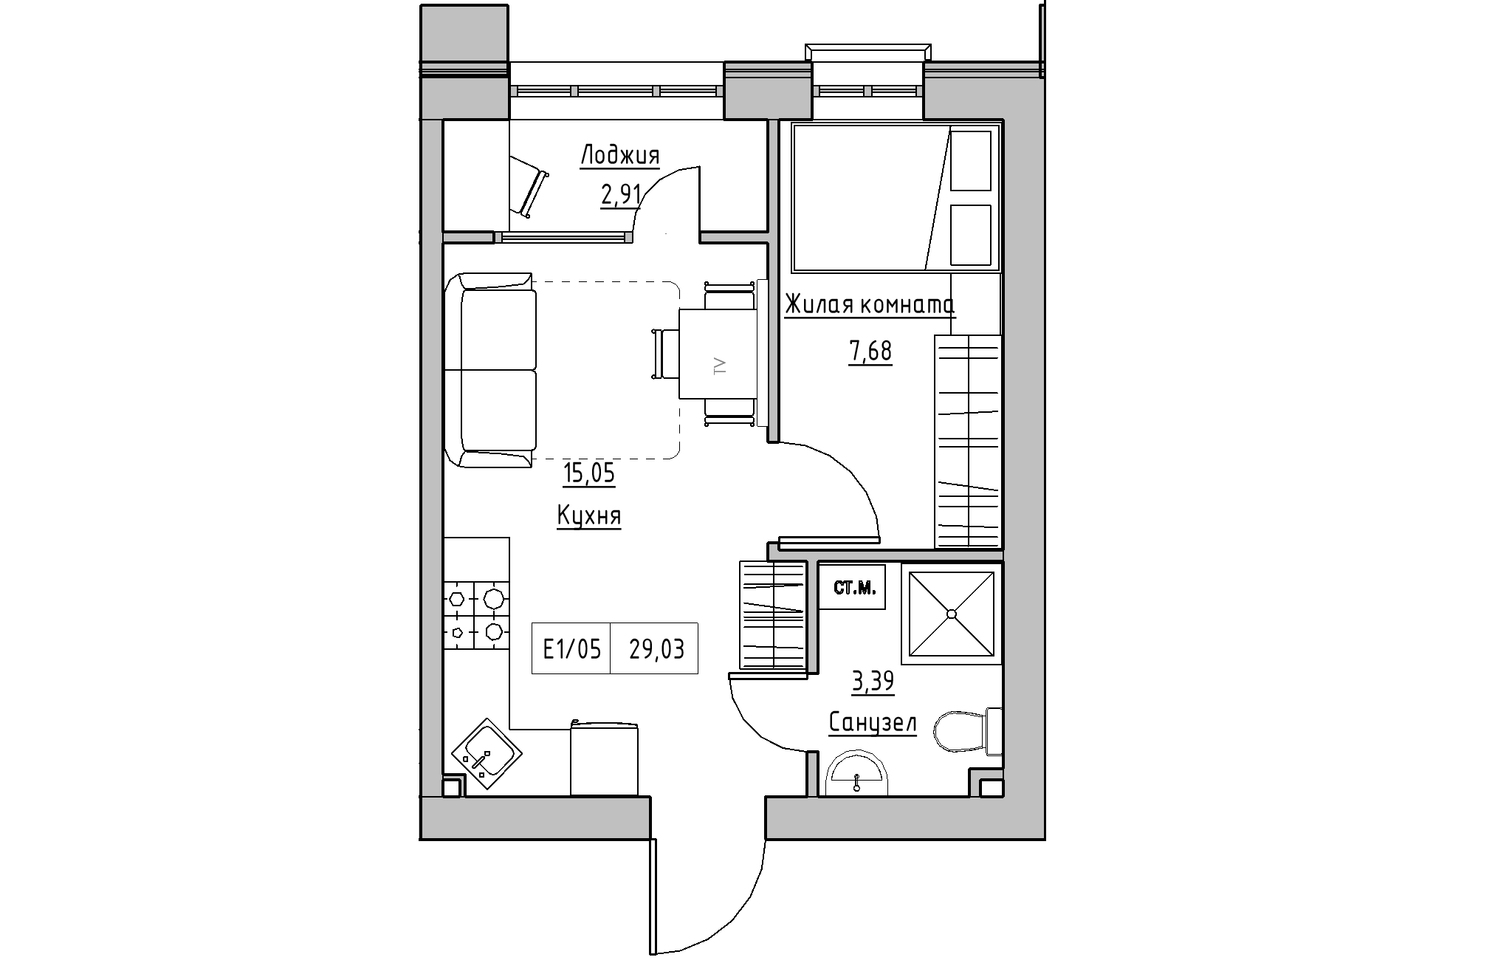 Планування 1-к квартира площею 29.03м2, KS-010-03/0007.